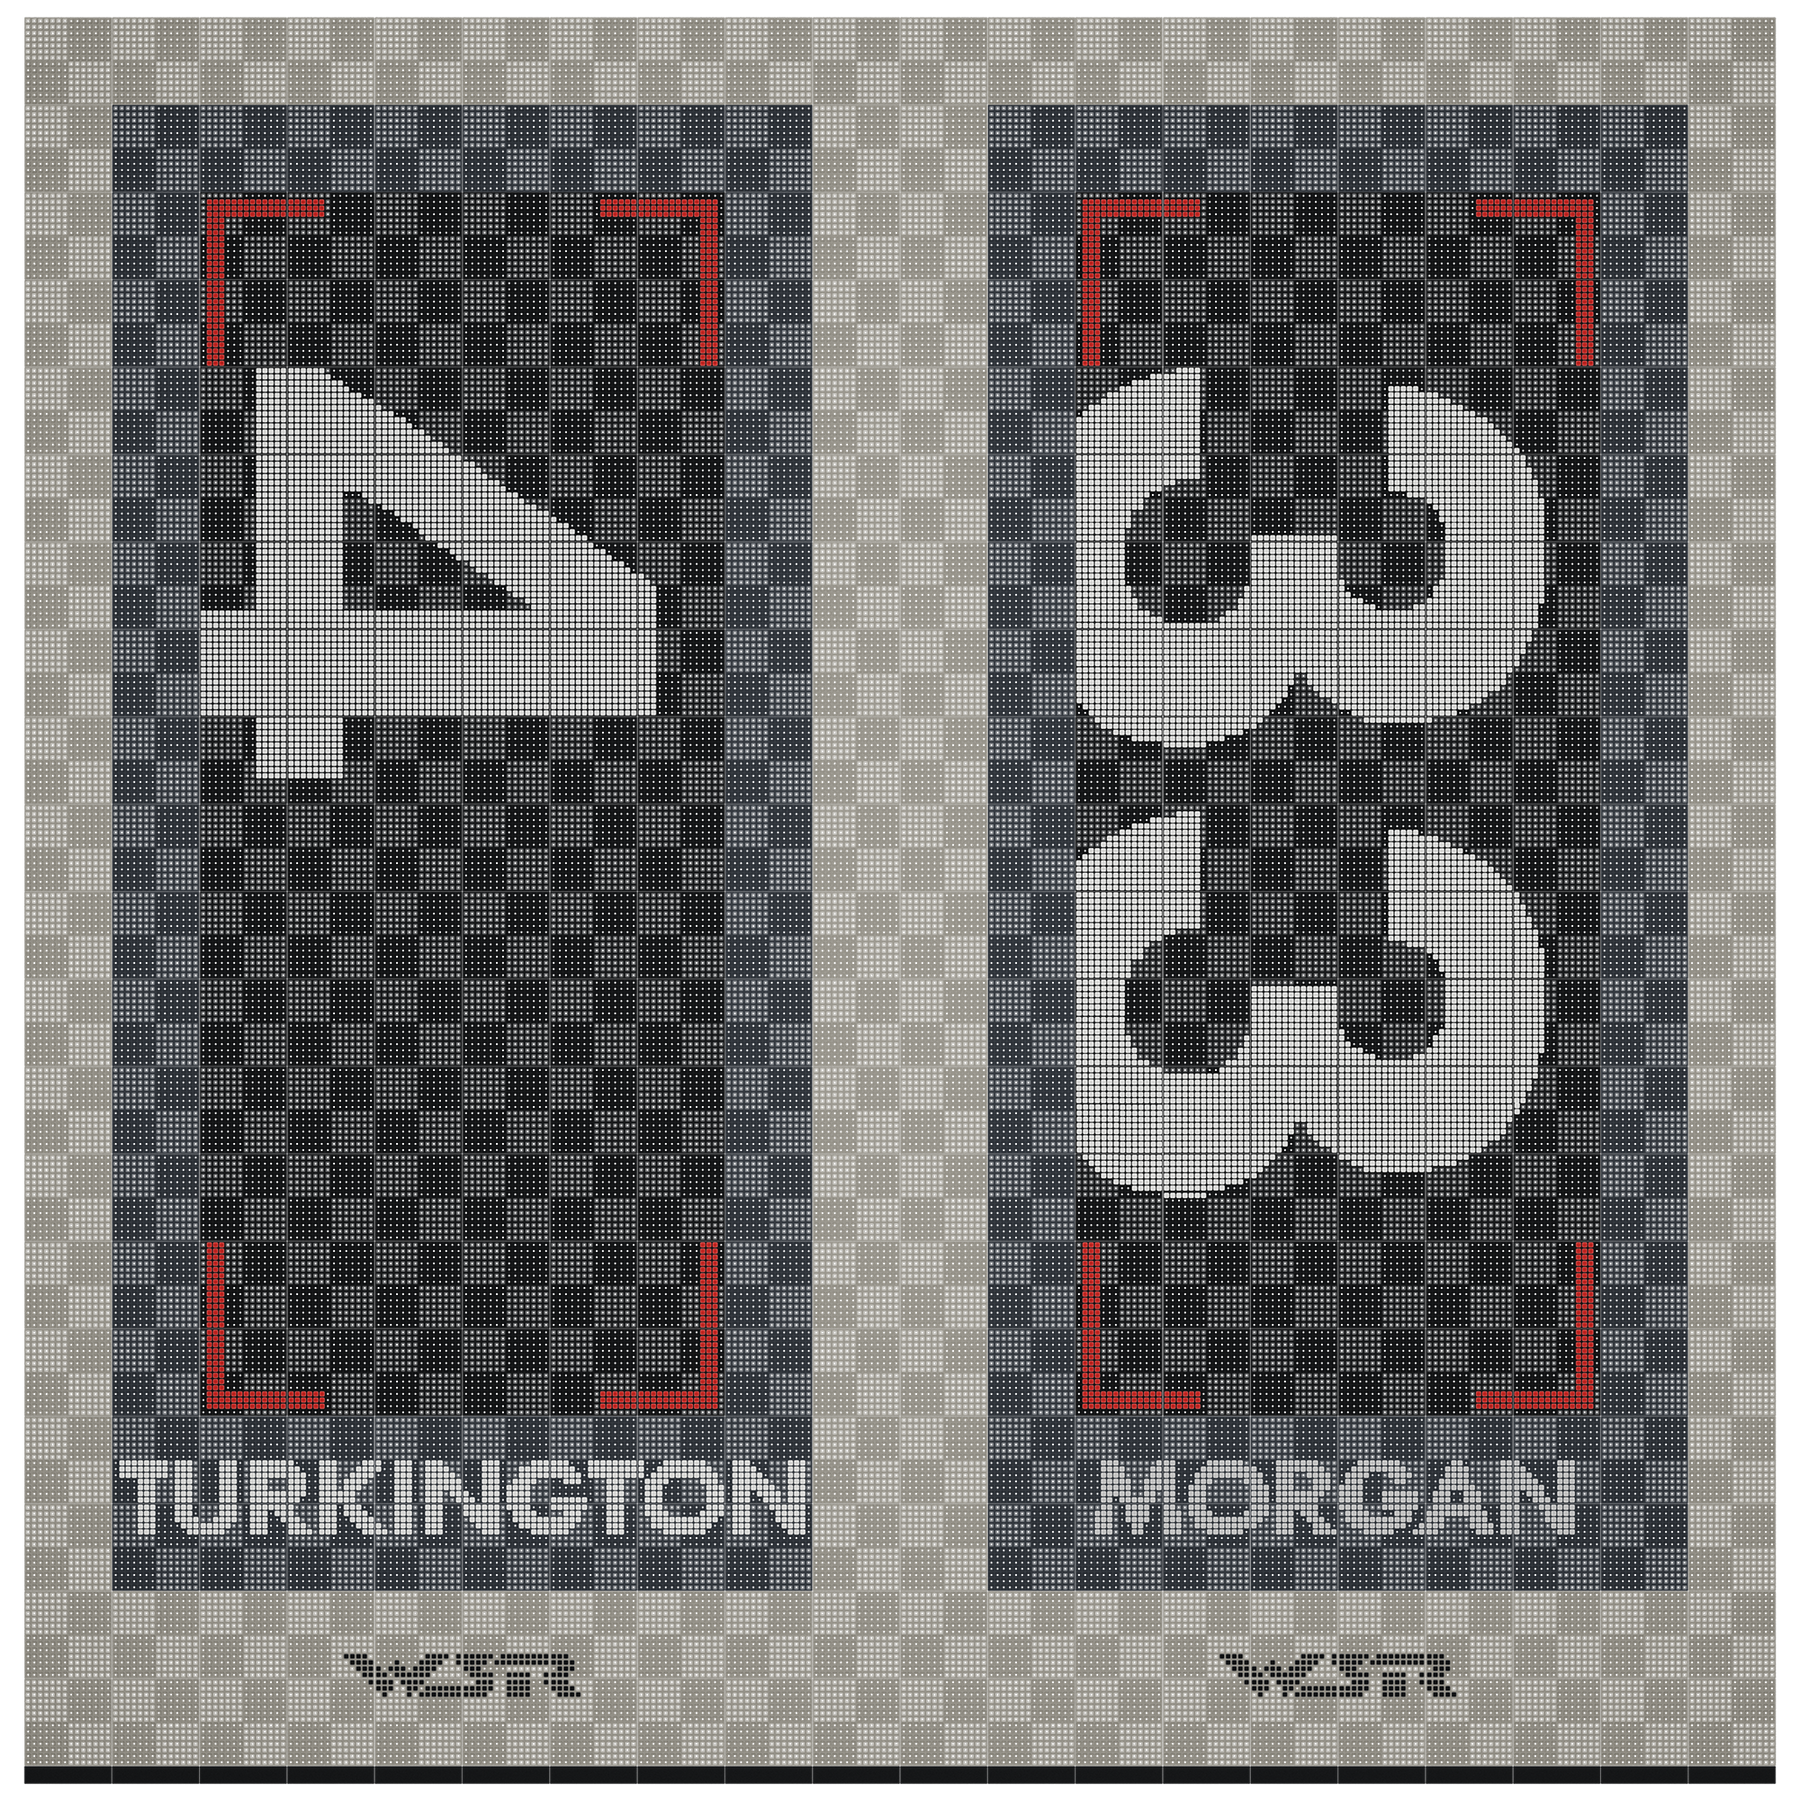 West Surrey Racing - Colin Turkington and Adam Morgan - Double Garage Floor Pack Garage Flooring Pack versodeck